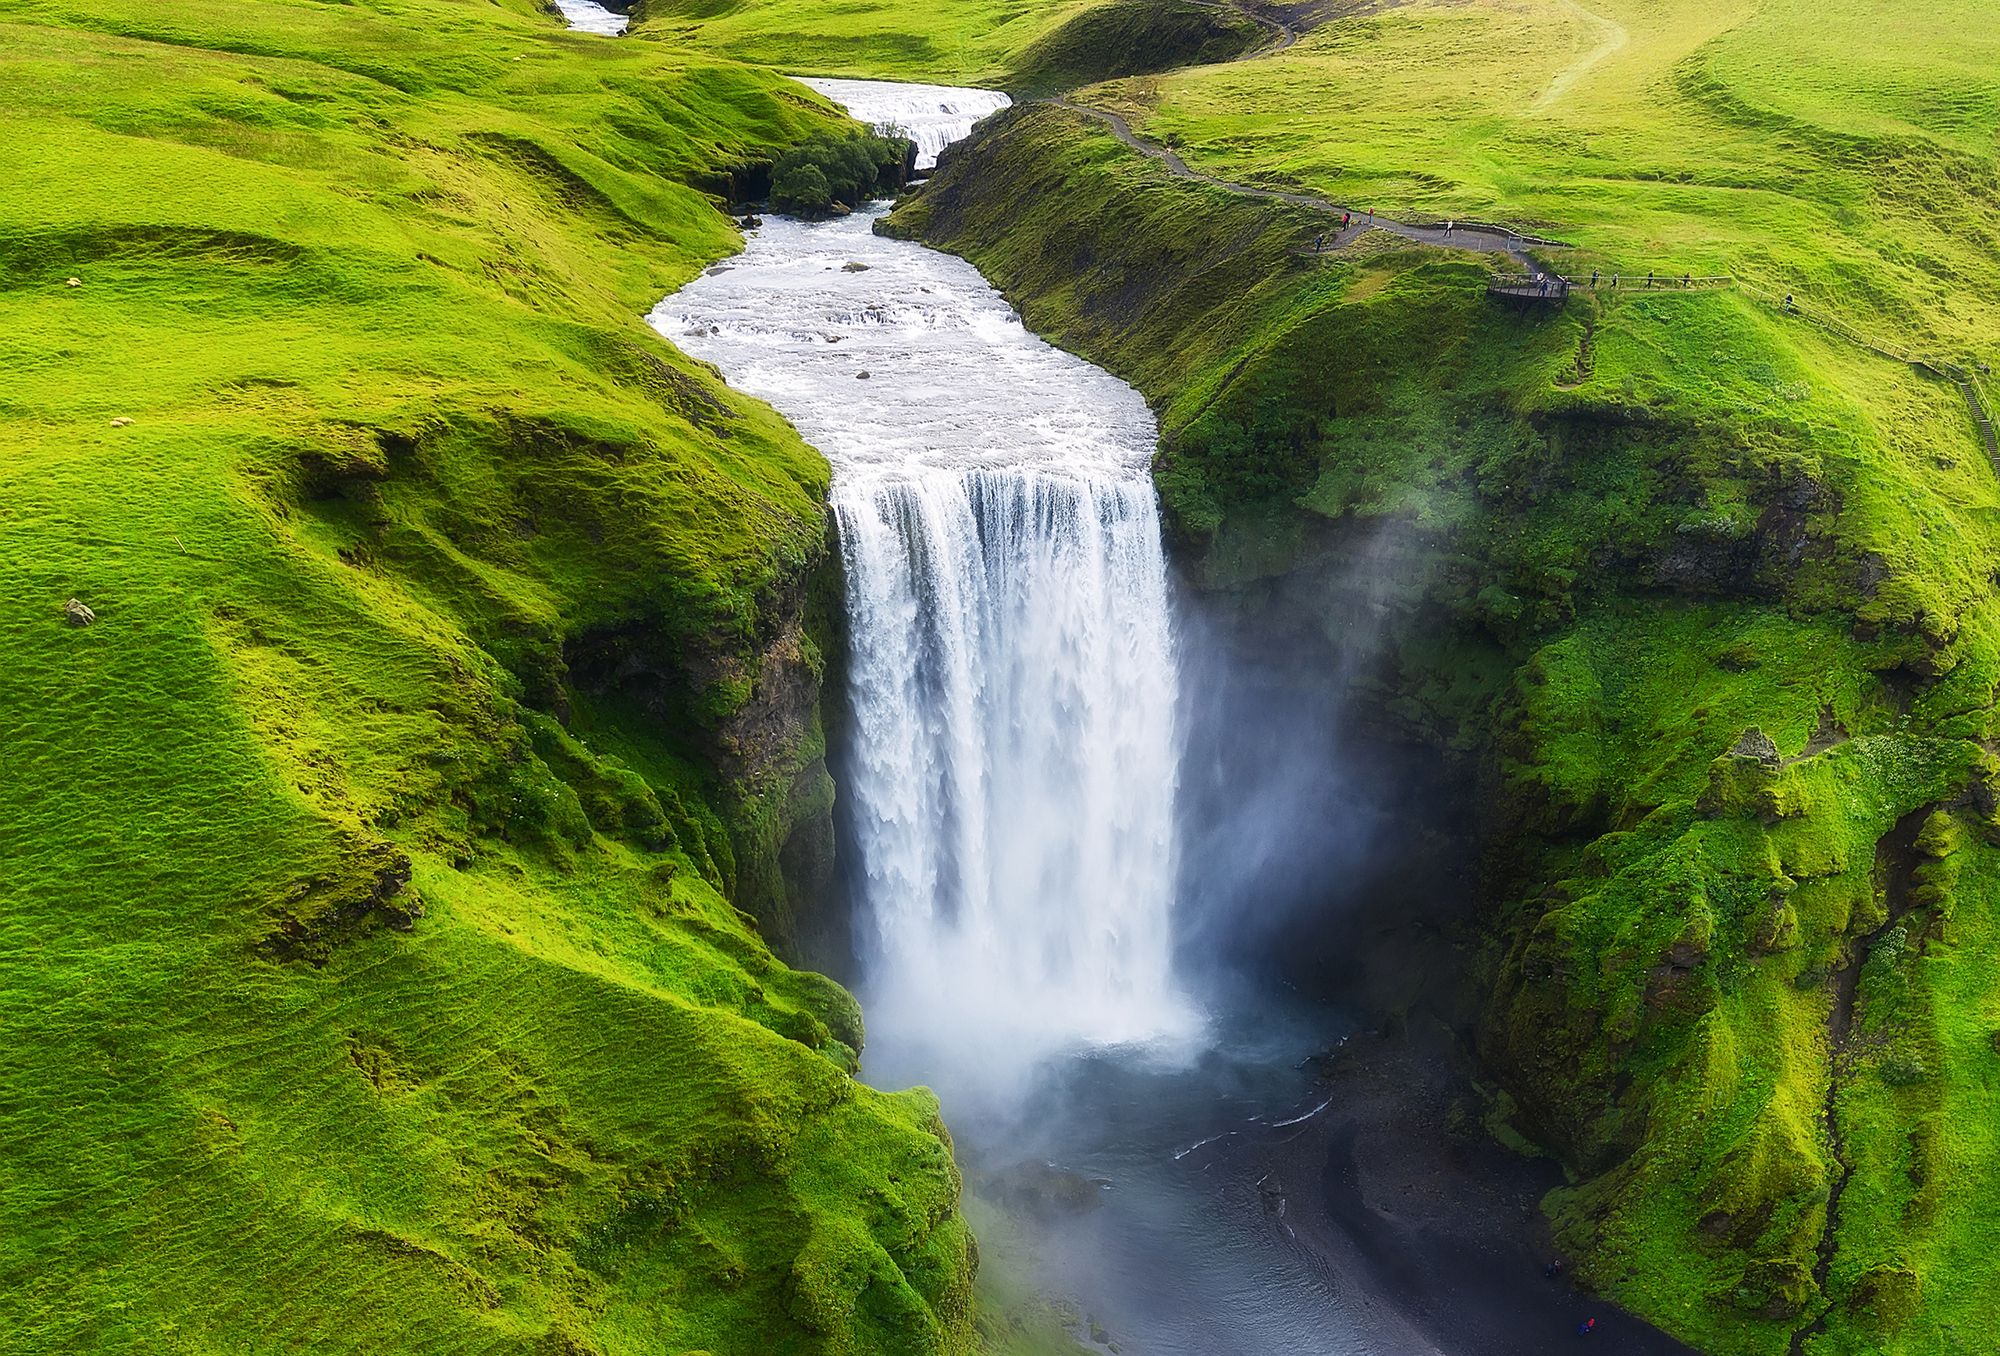 Ein Fluss mit Wasserfall in einer grünen Landschaft, Symbolbild Wet Dreams